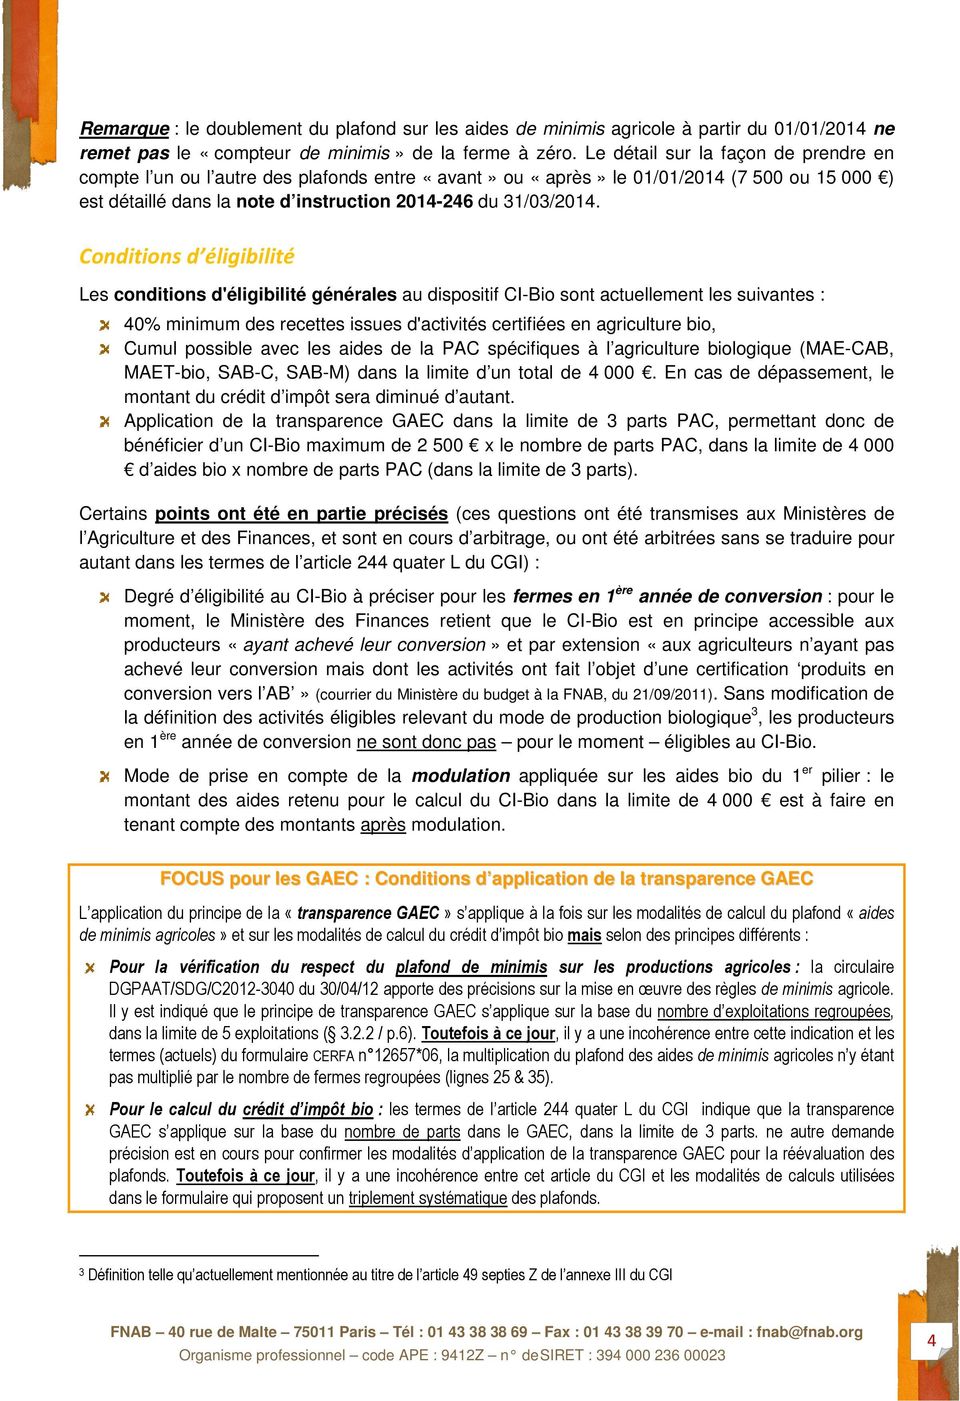 Conditions d éligibilité Les conditions d'éligibilité générales au dispositif CI-Bio sont actuellement les suivantes : 40% minimum des recettes issues d'activités certifiées en agriculture bio, Cumul